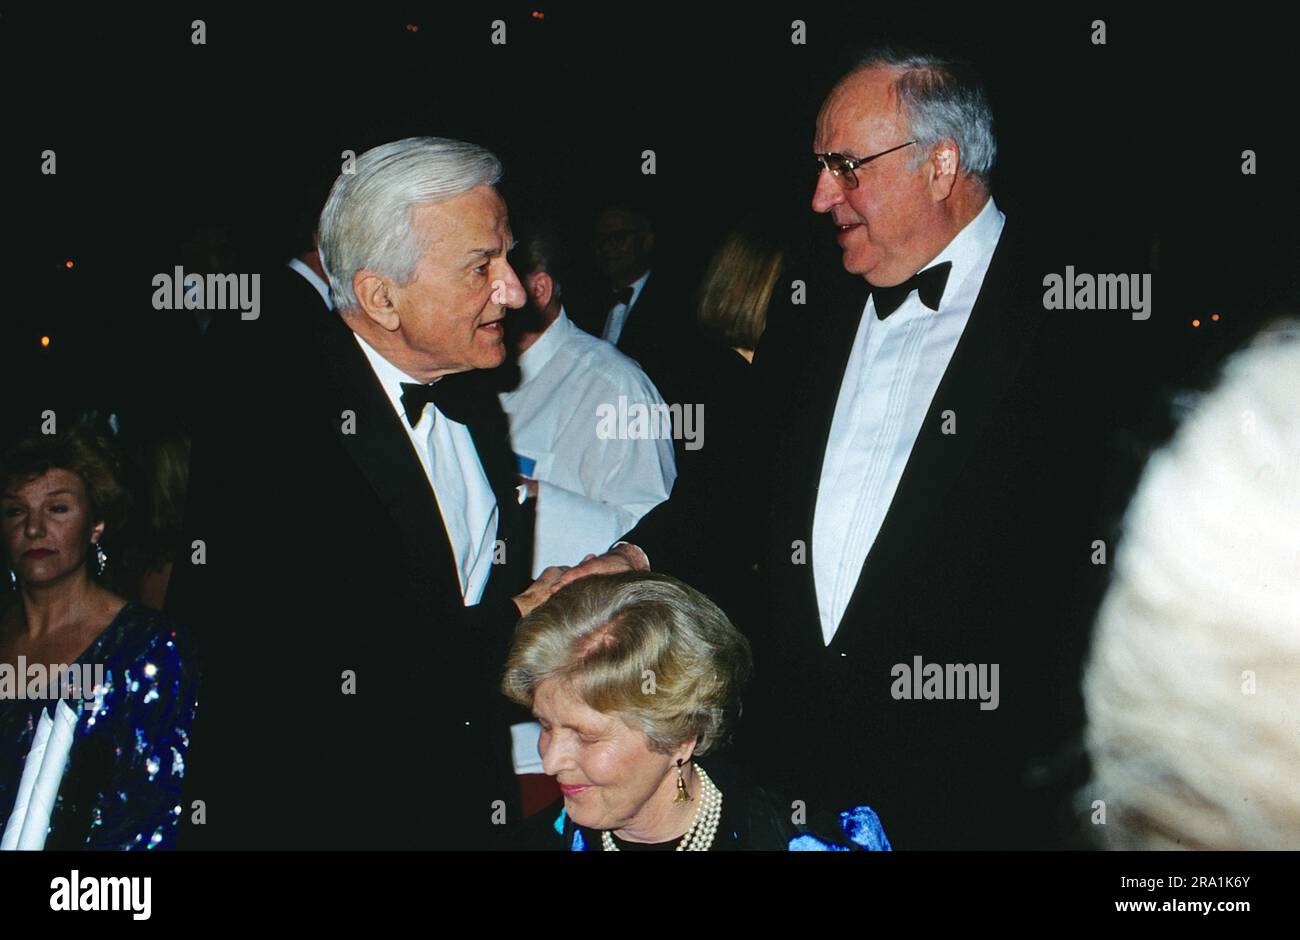 Bundespräsident Richard von Weizsäcker begrüsst Bundeskanzler Helmut Kohl bei einer Veranstaltung, Bildmitte sitzend: Marianne von Weizsäcker, circa 1990. Stock Photo